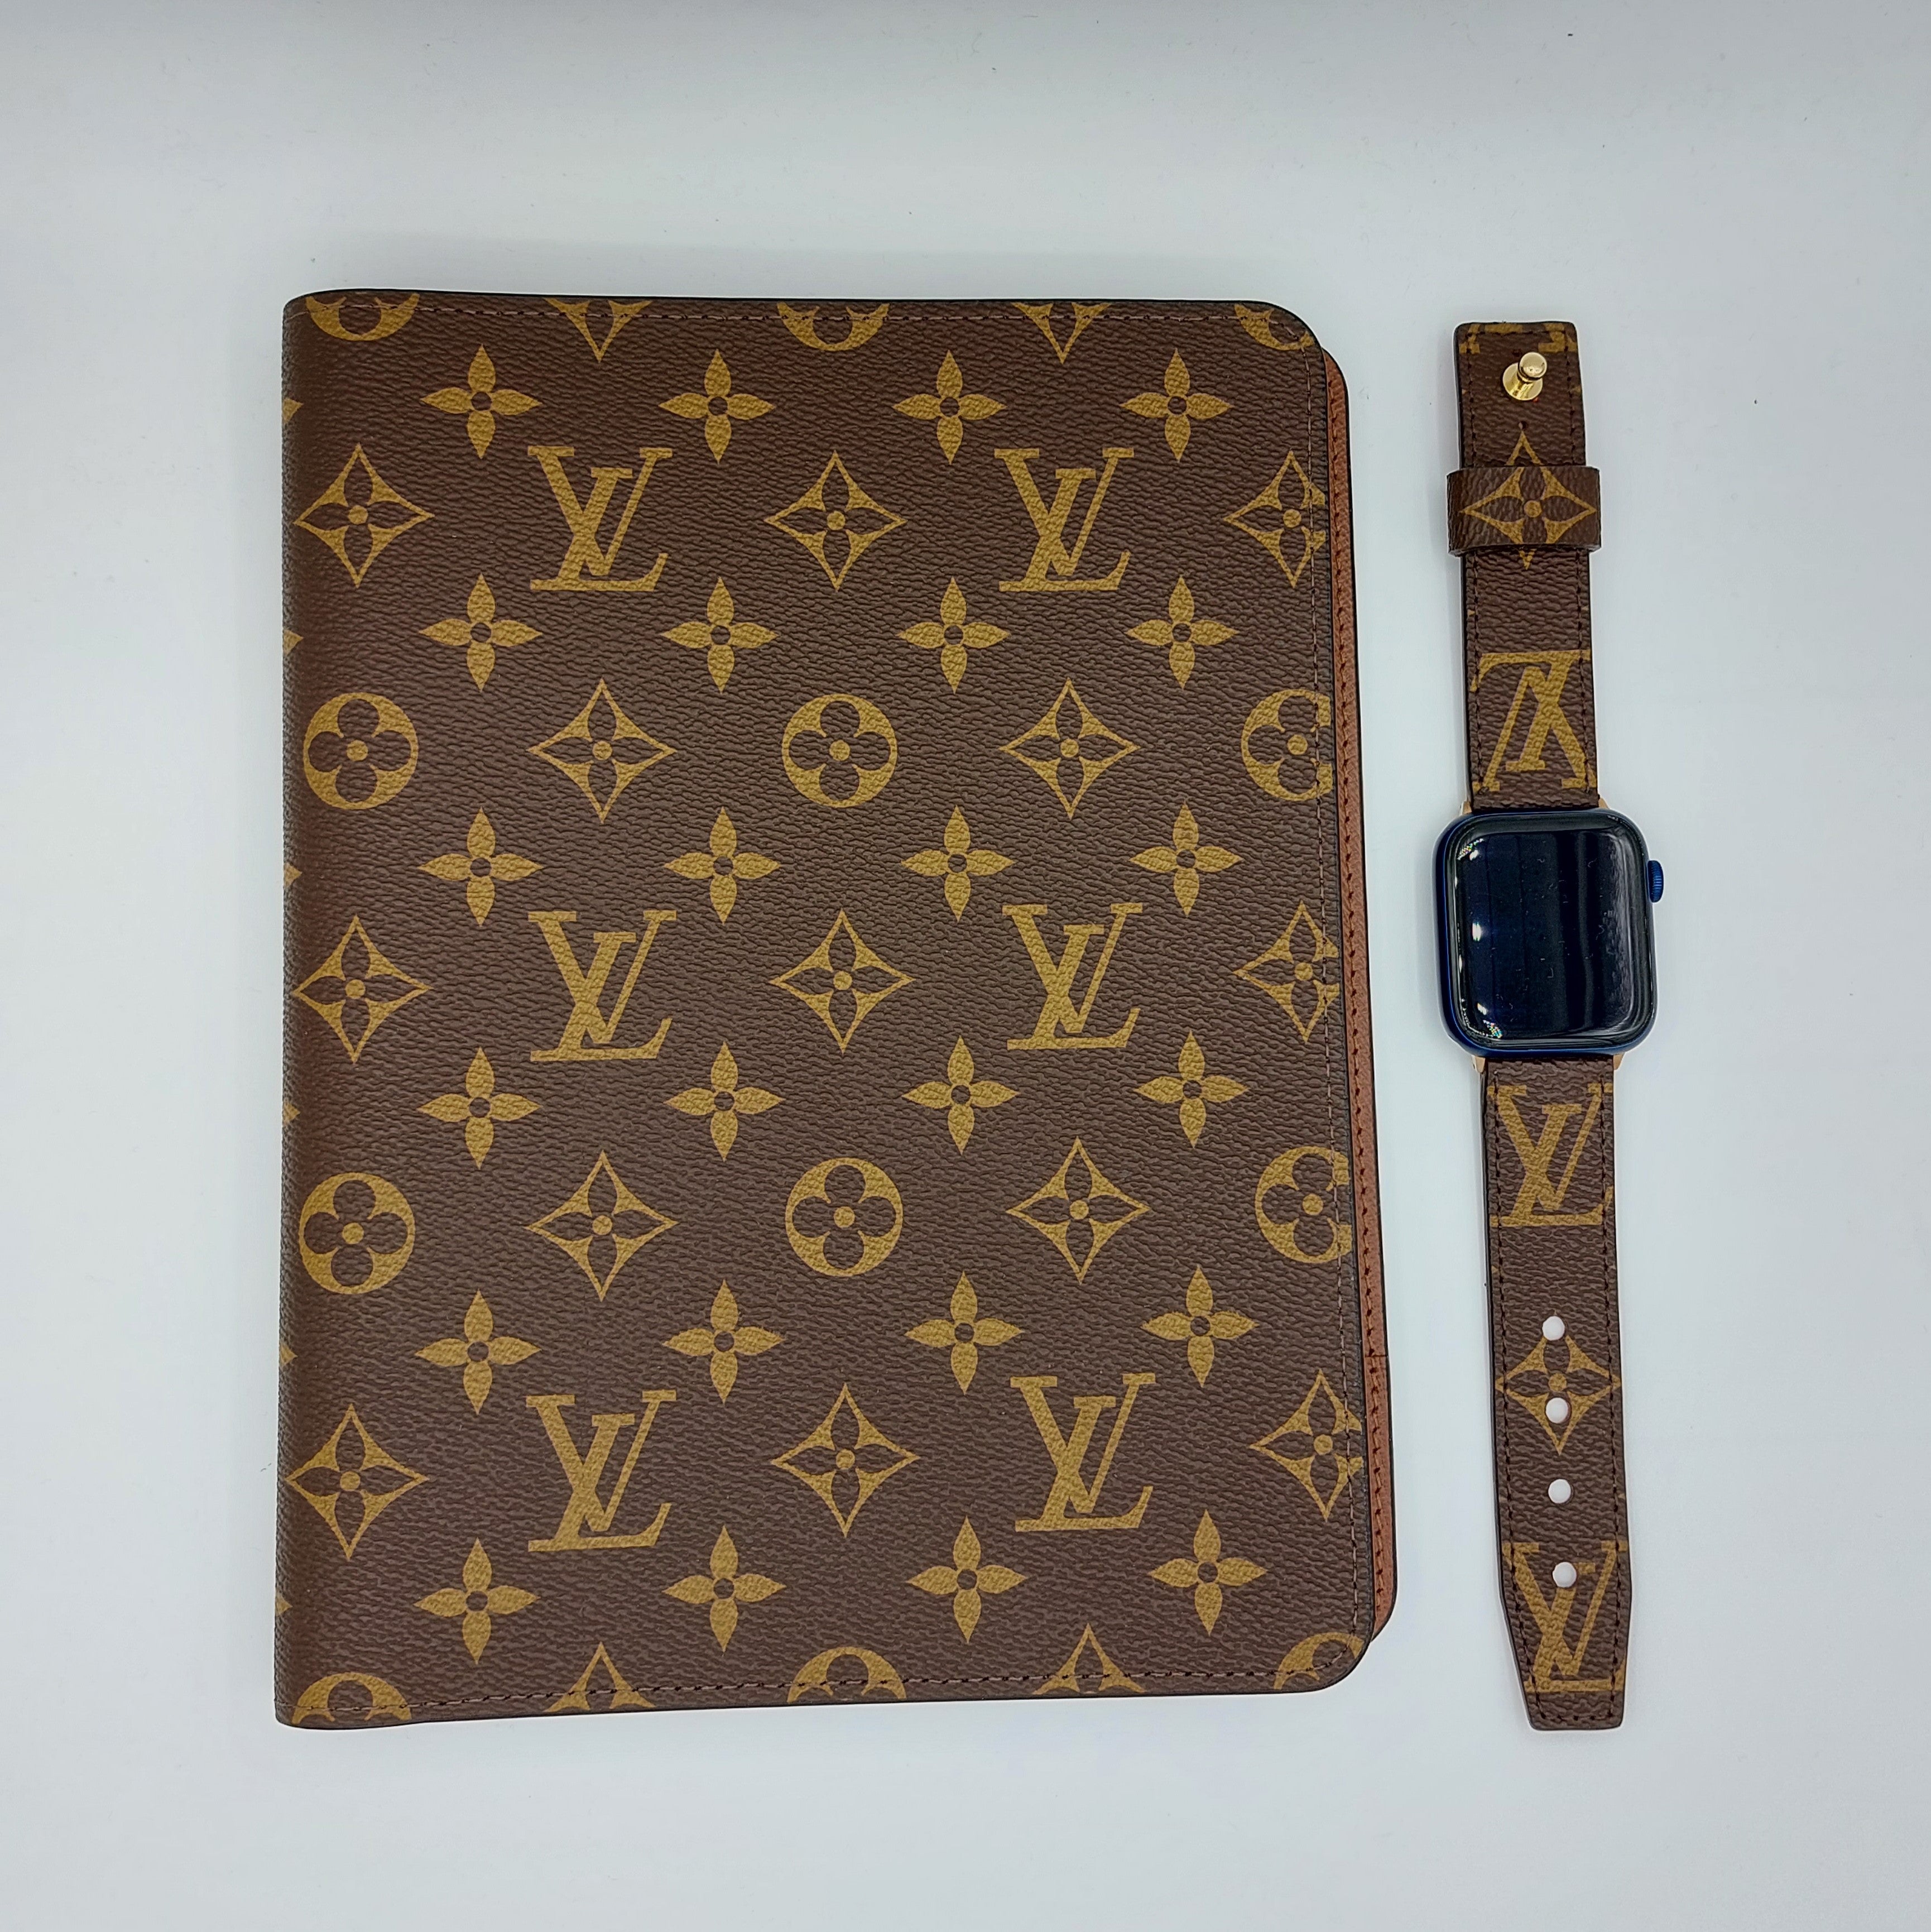 Authentic Louis Vuitton iPad case